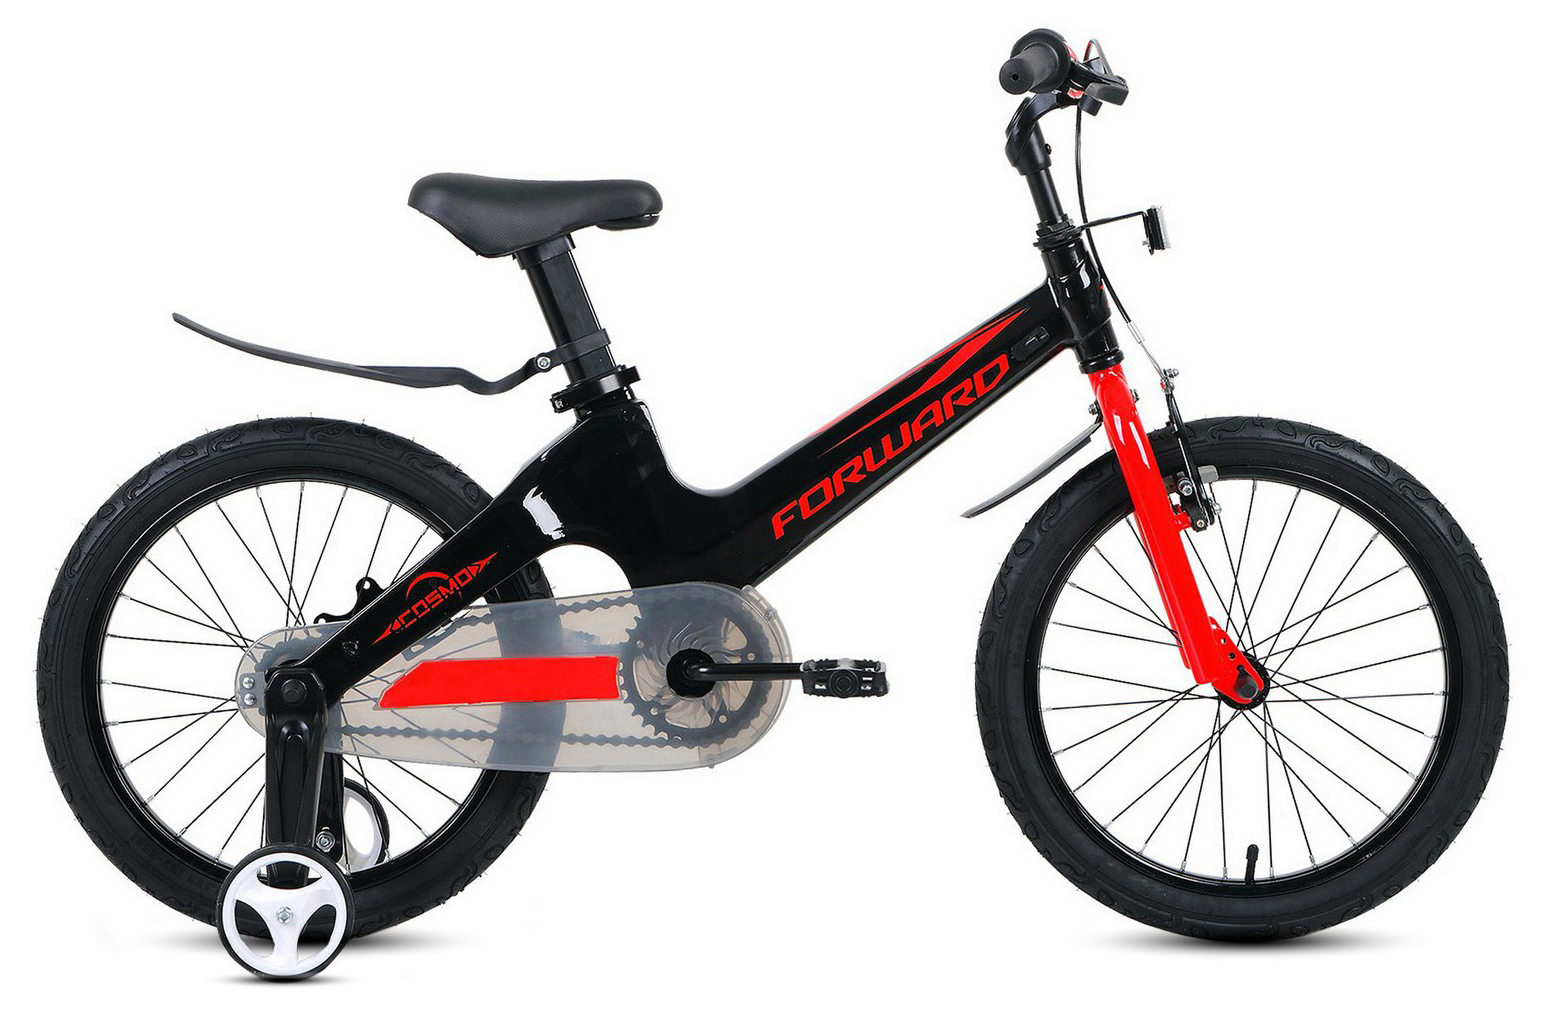  Отзывы о Детском велосипеде Forward Cosmo 18 (2021) 2021